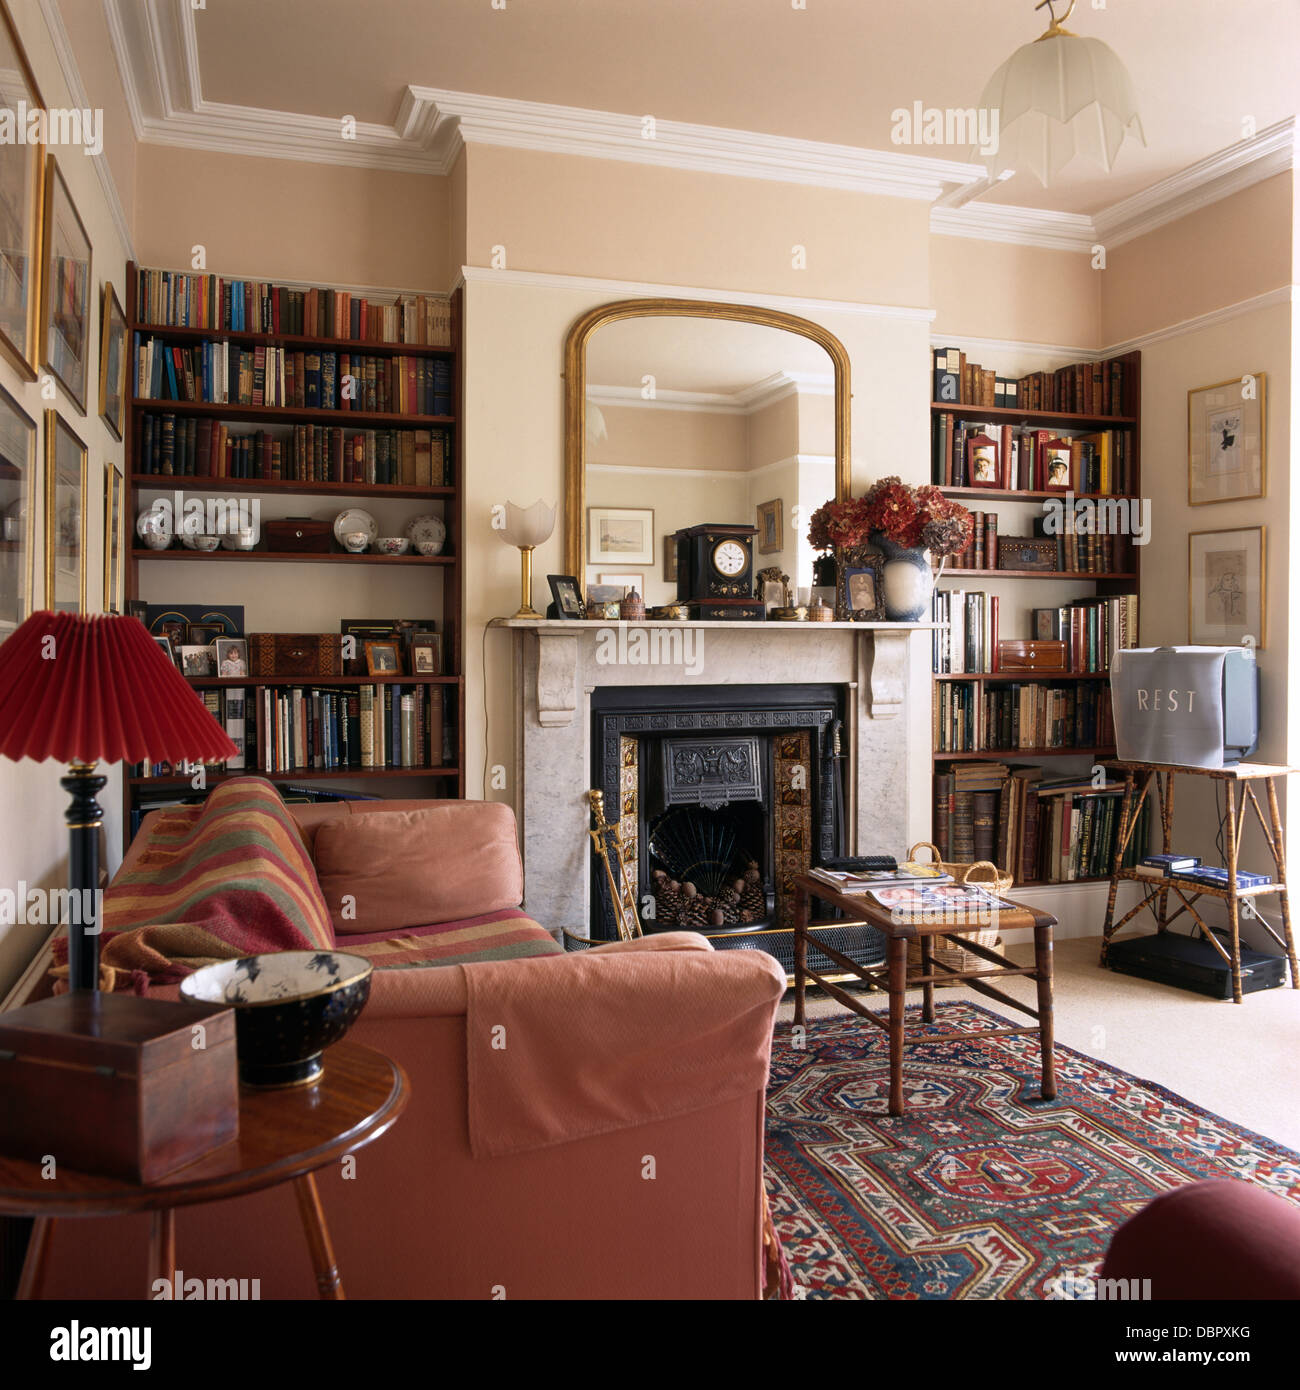 Rosa scuro divano in stile vittoriano stanza vivente con specchio dorato  sopra caminetto in marmo tra alcove a scaffali Foto stock - Alamy